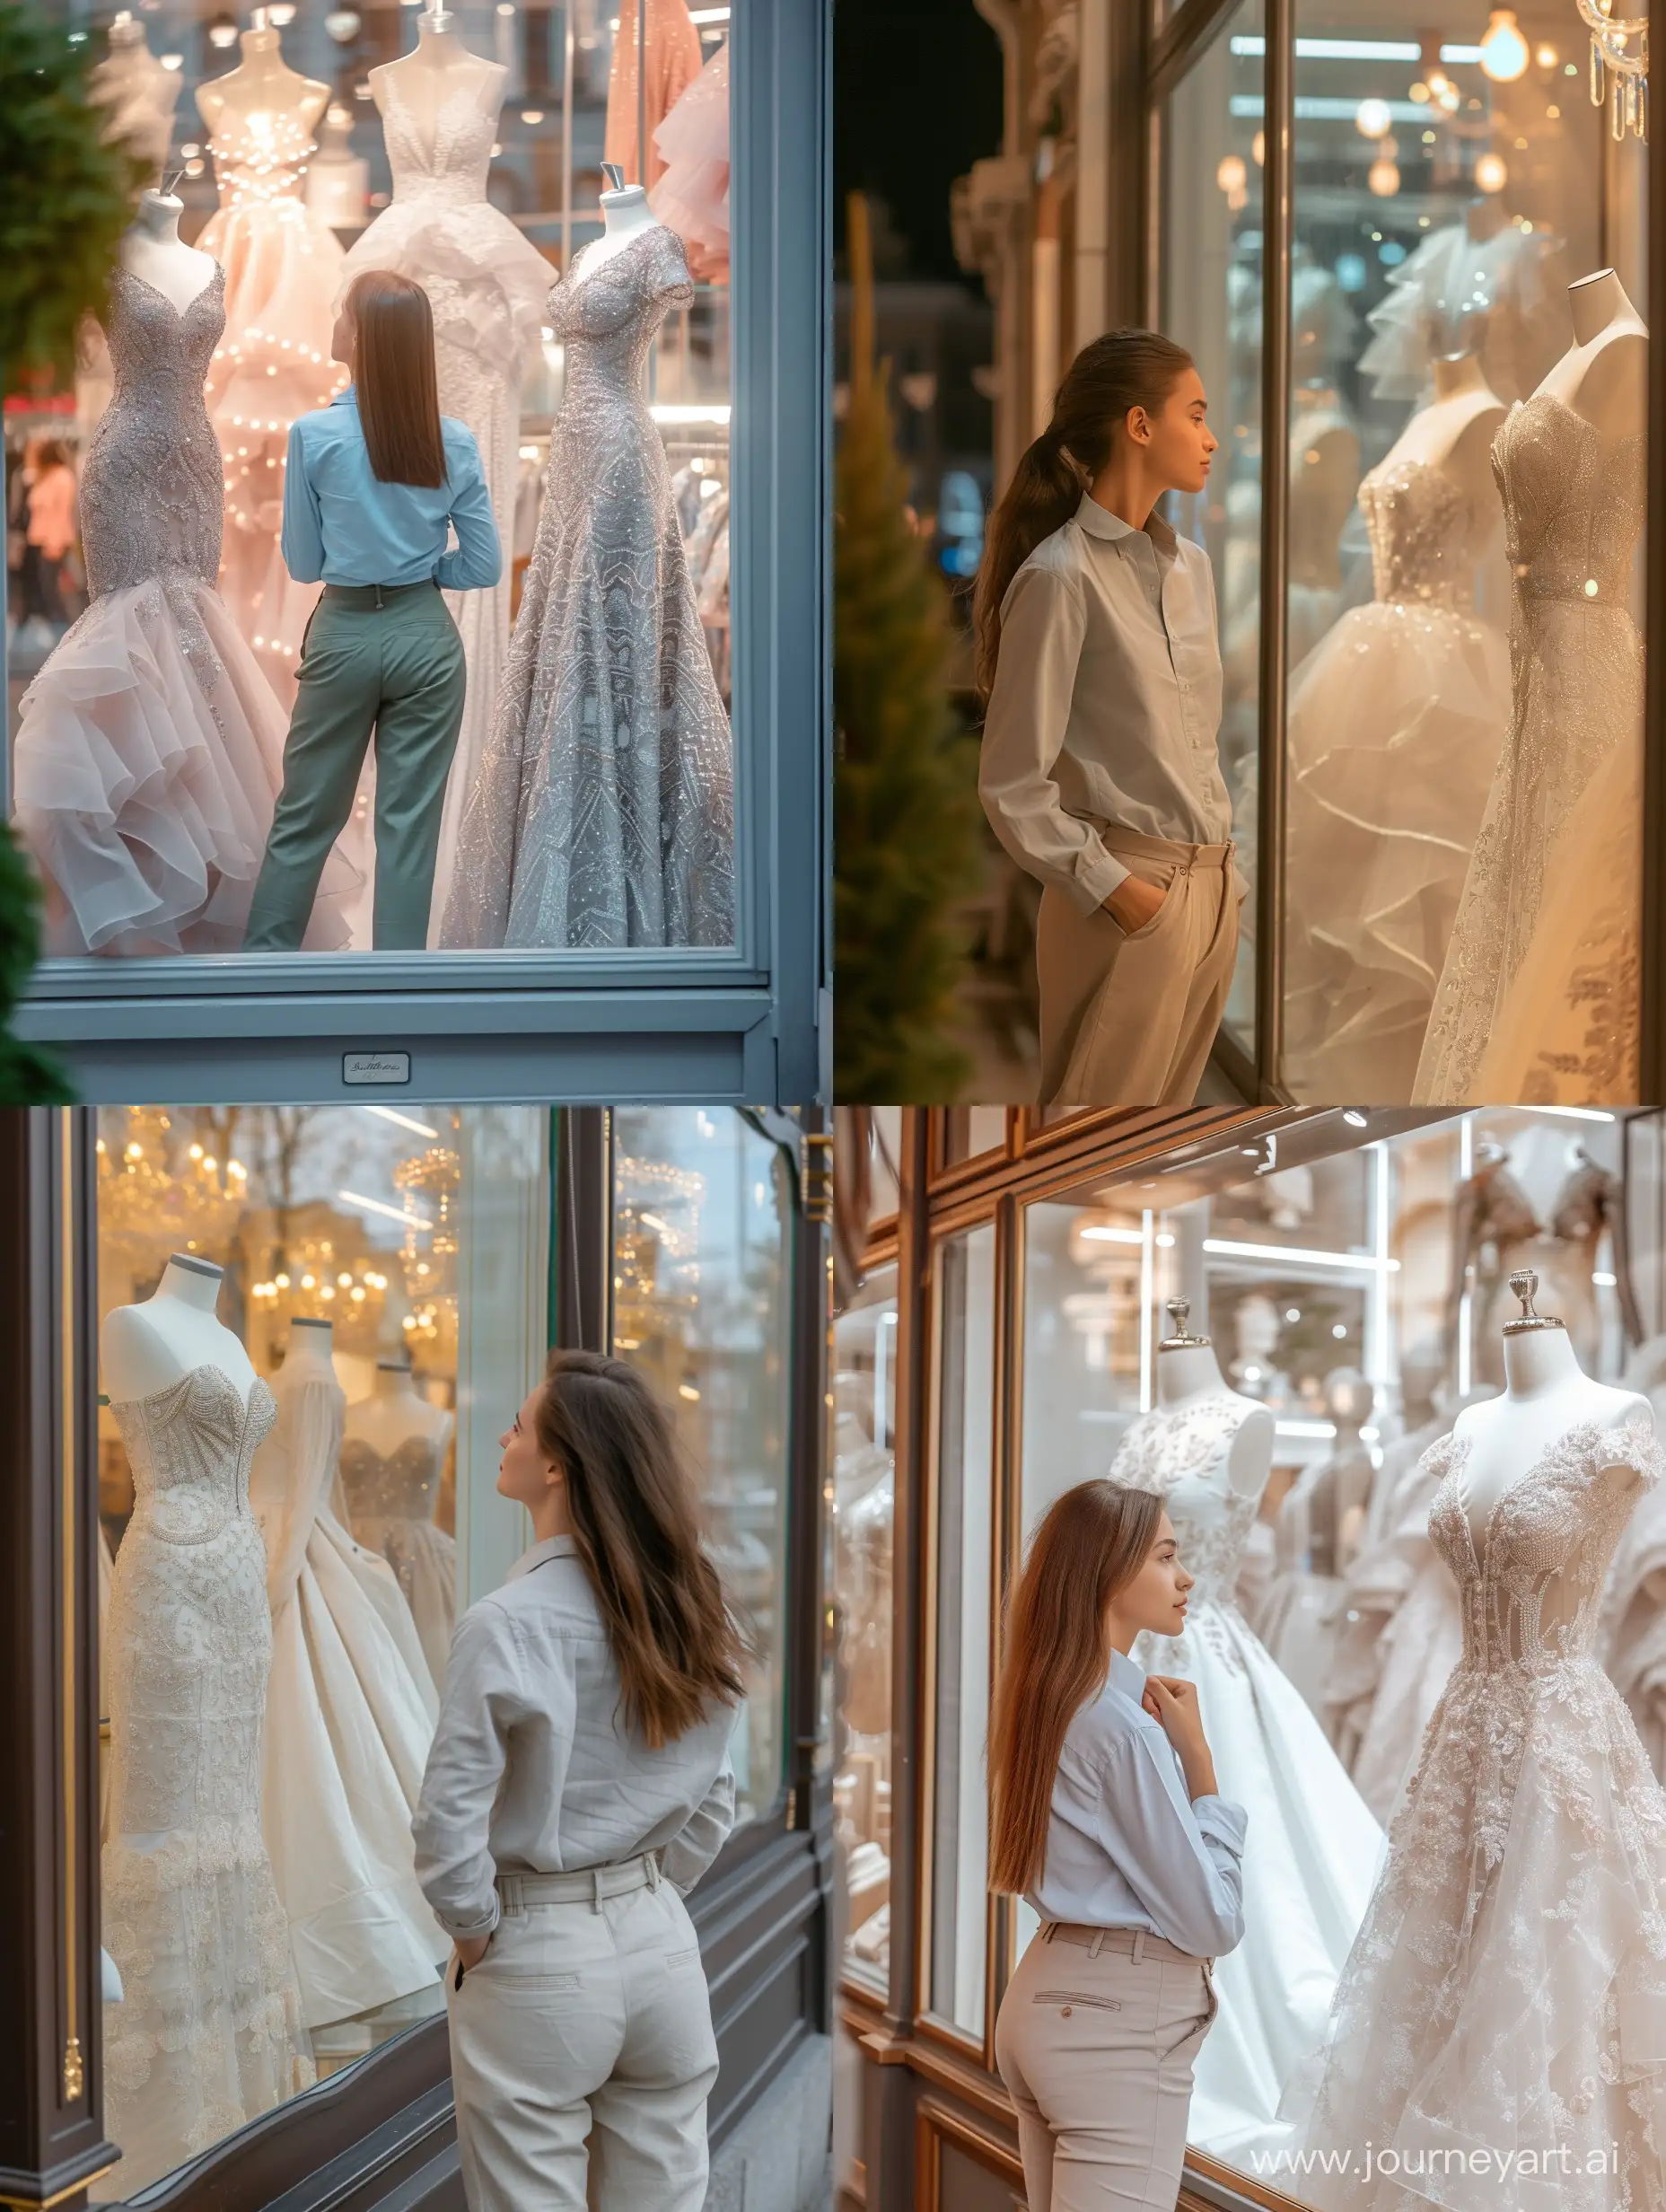 Красивая девушка в рубашке и брюках смотрит на витрину магазина с роскошными платьями
